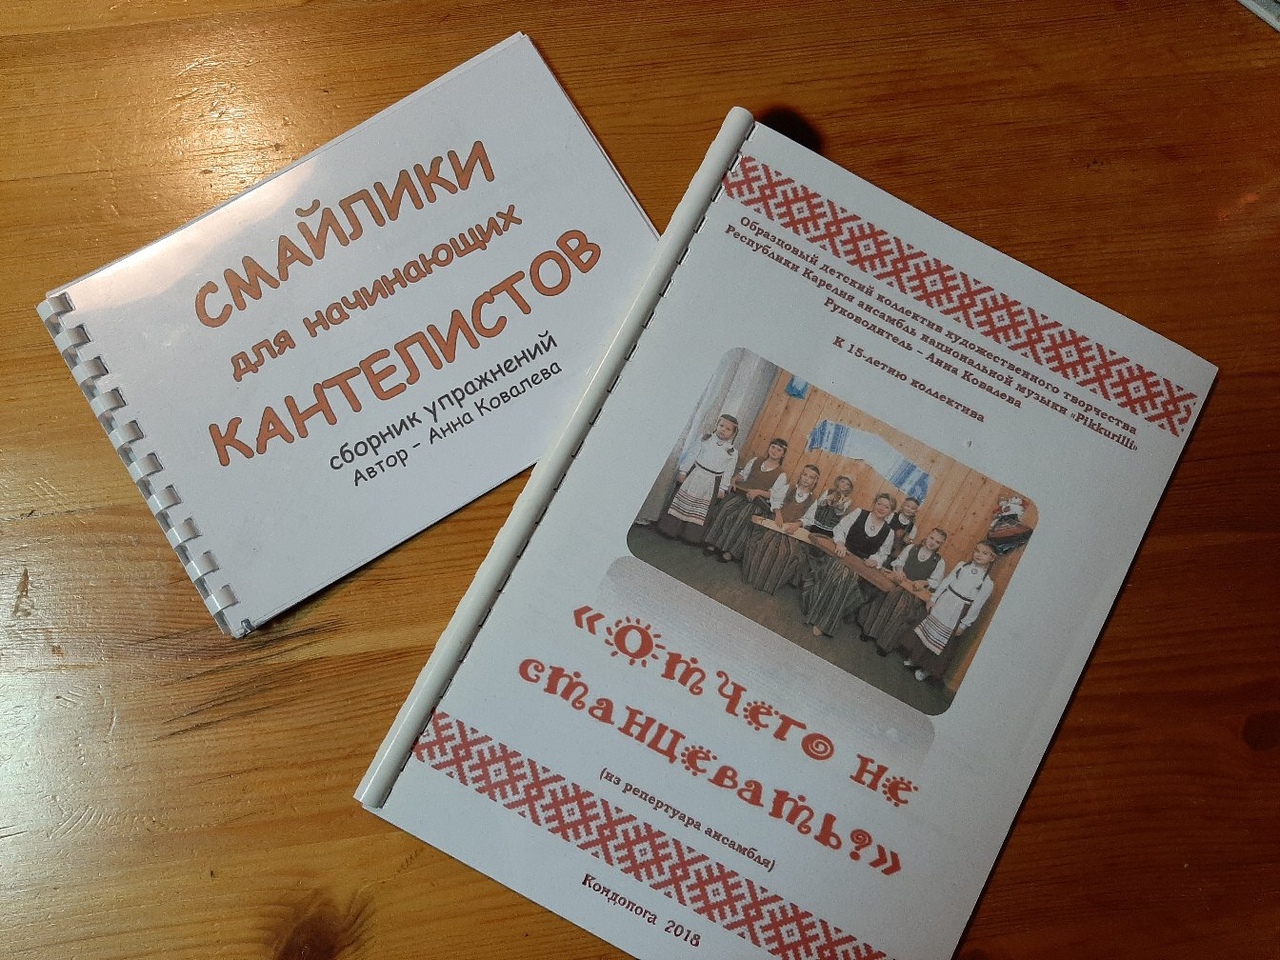 Kantele study guide by Anna Kovaleva